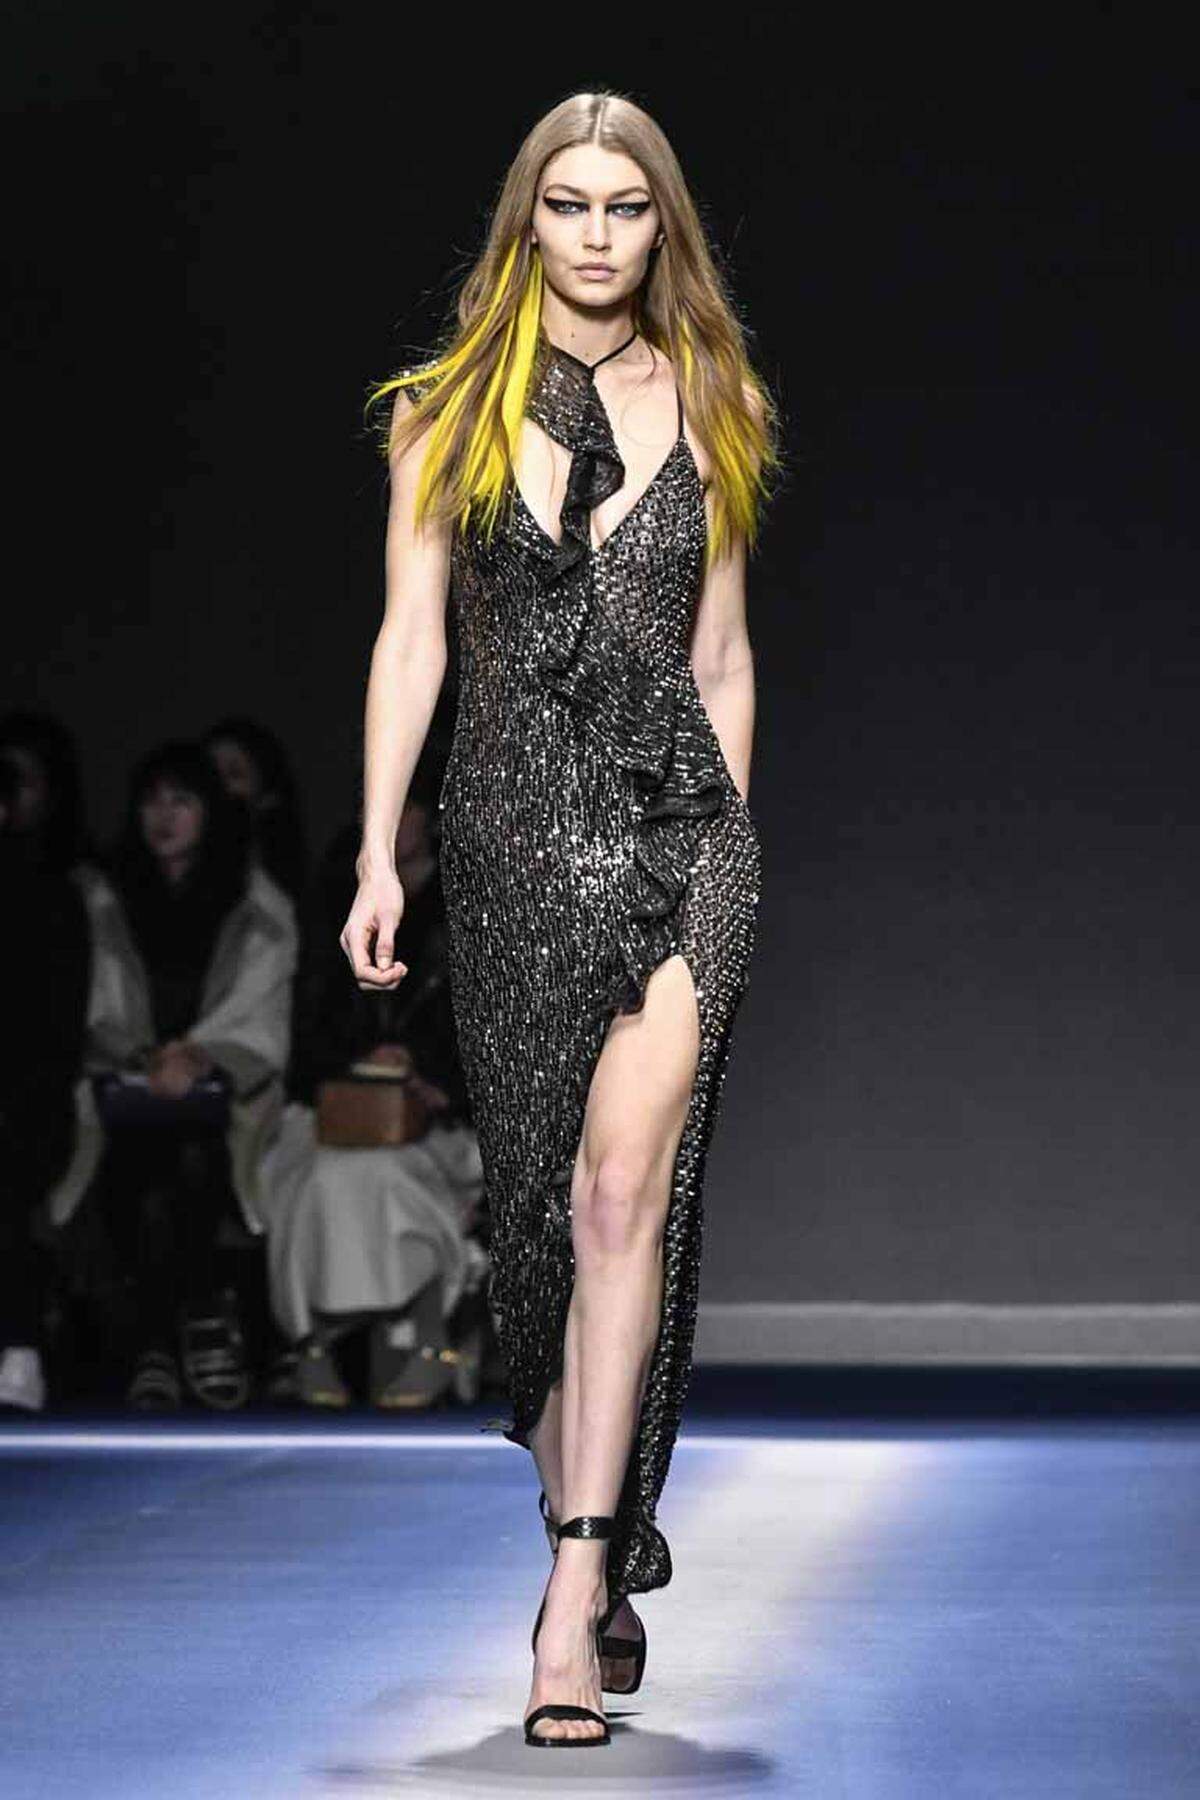 Feminismus ist der neue Trend in der Mode. Donatella Versace ist es bei der Mailänder Modewoche am Freitagabend nicht nur um Kleidung, sondern vor allem um Haltung gegangen - wie schon am Vortag bei Miuccia Prada. "Equality" (Gleichberechtigung), "Courage" (Mut), "Unity" (Einigkeit) - mit diesen Botschaften bedruckte Versace viele Teile ihrer Kollektion Herbst/Winter 2017/18.